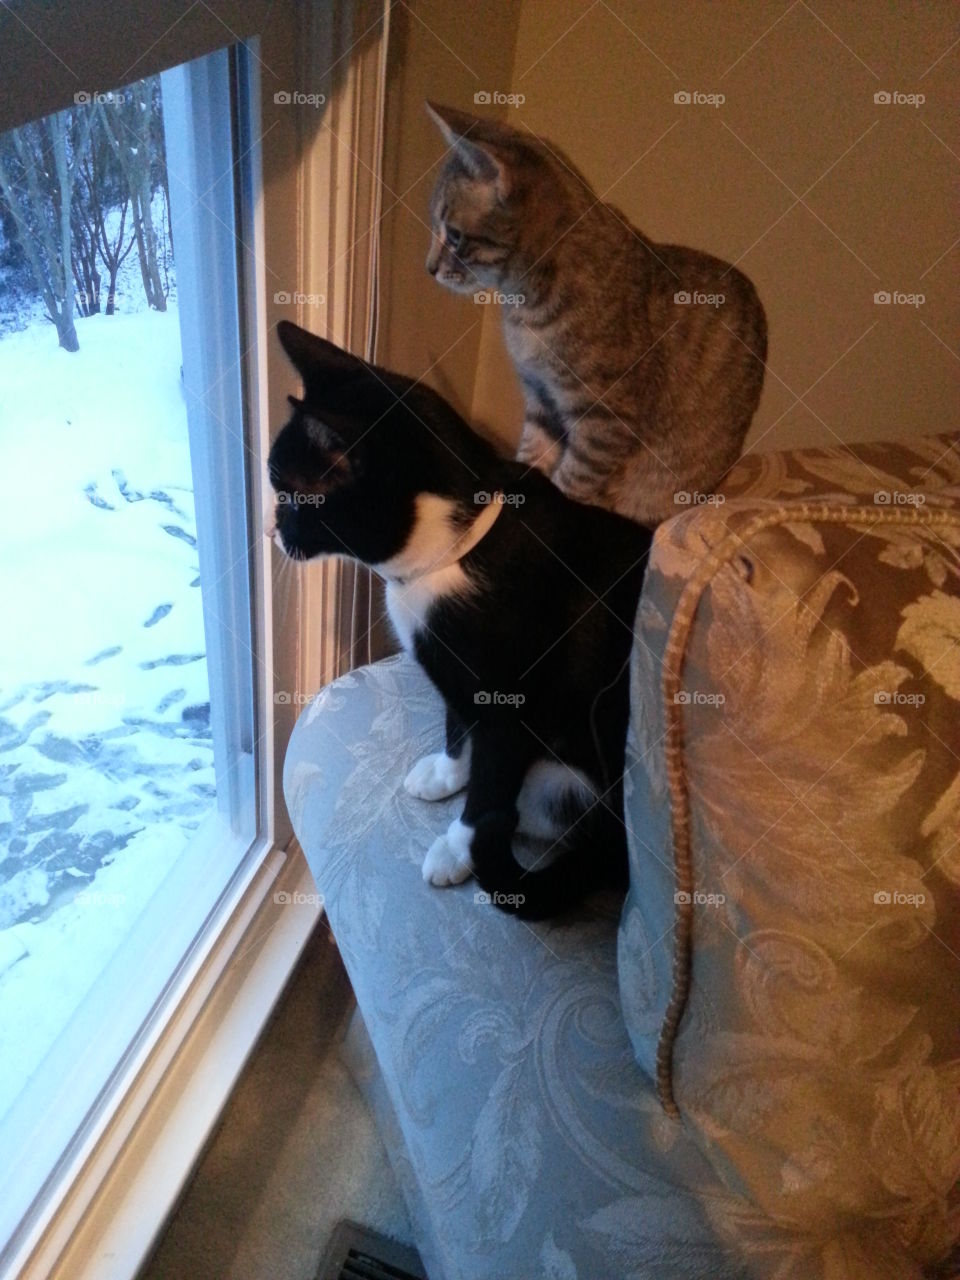 Cats Staring at Snow